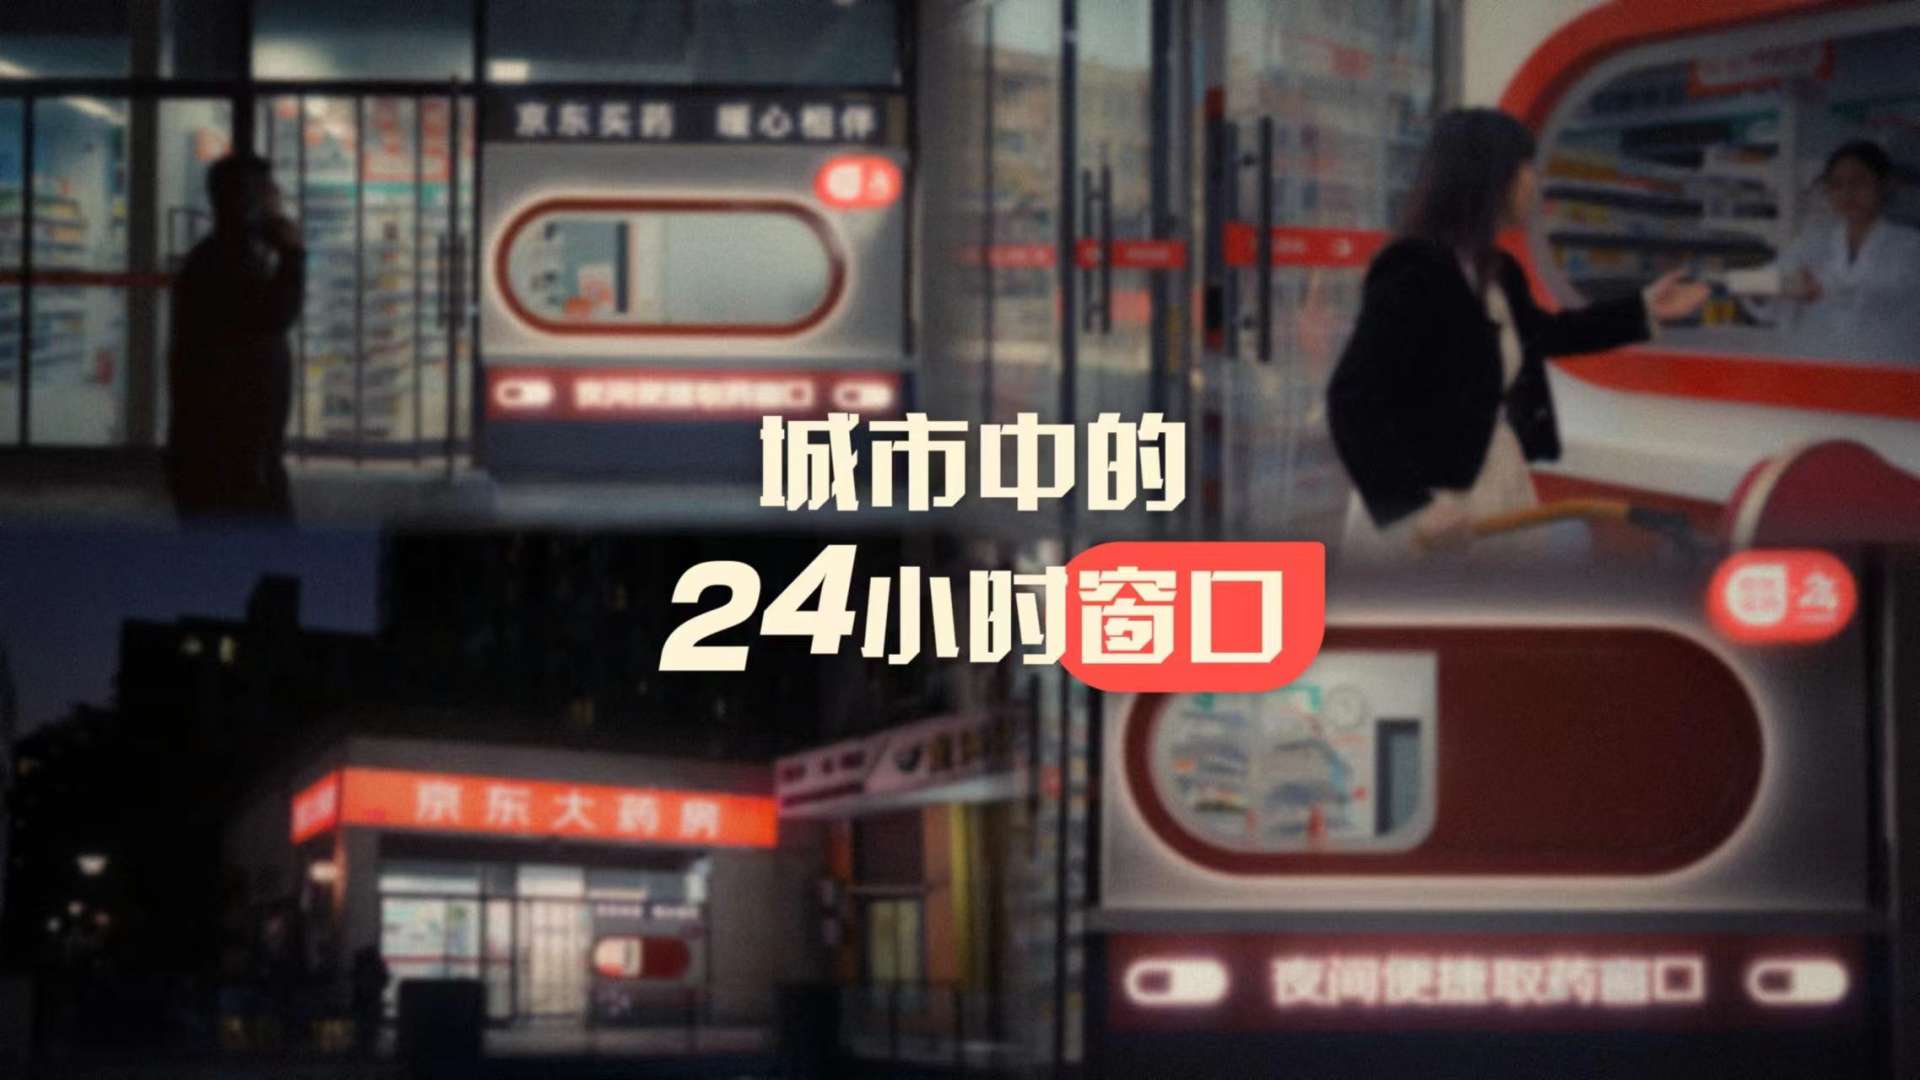 「京東買藥」超級符號暖心窗口視頻